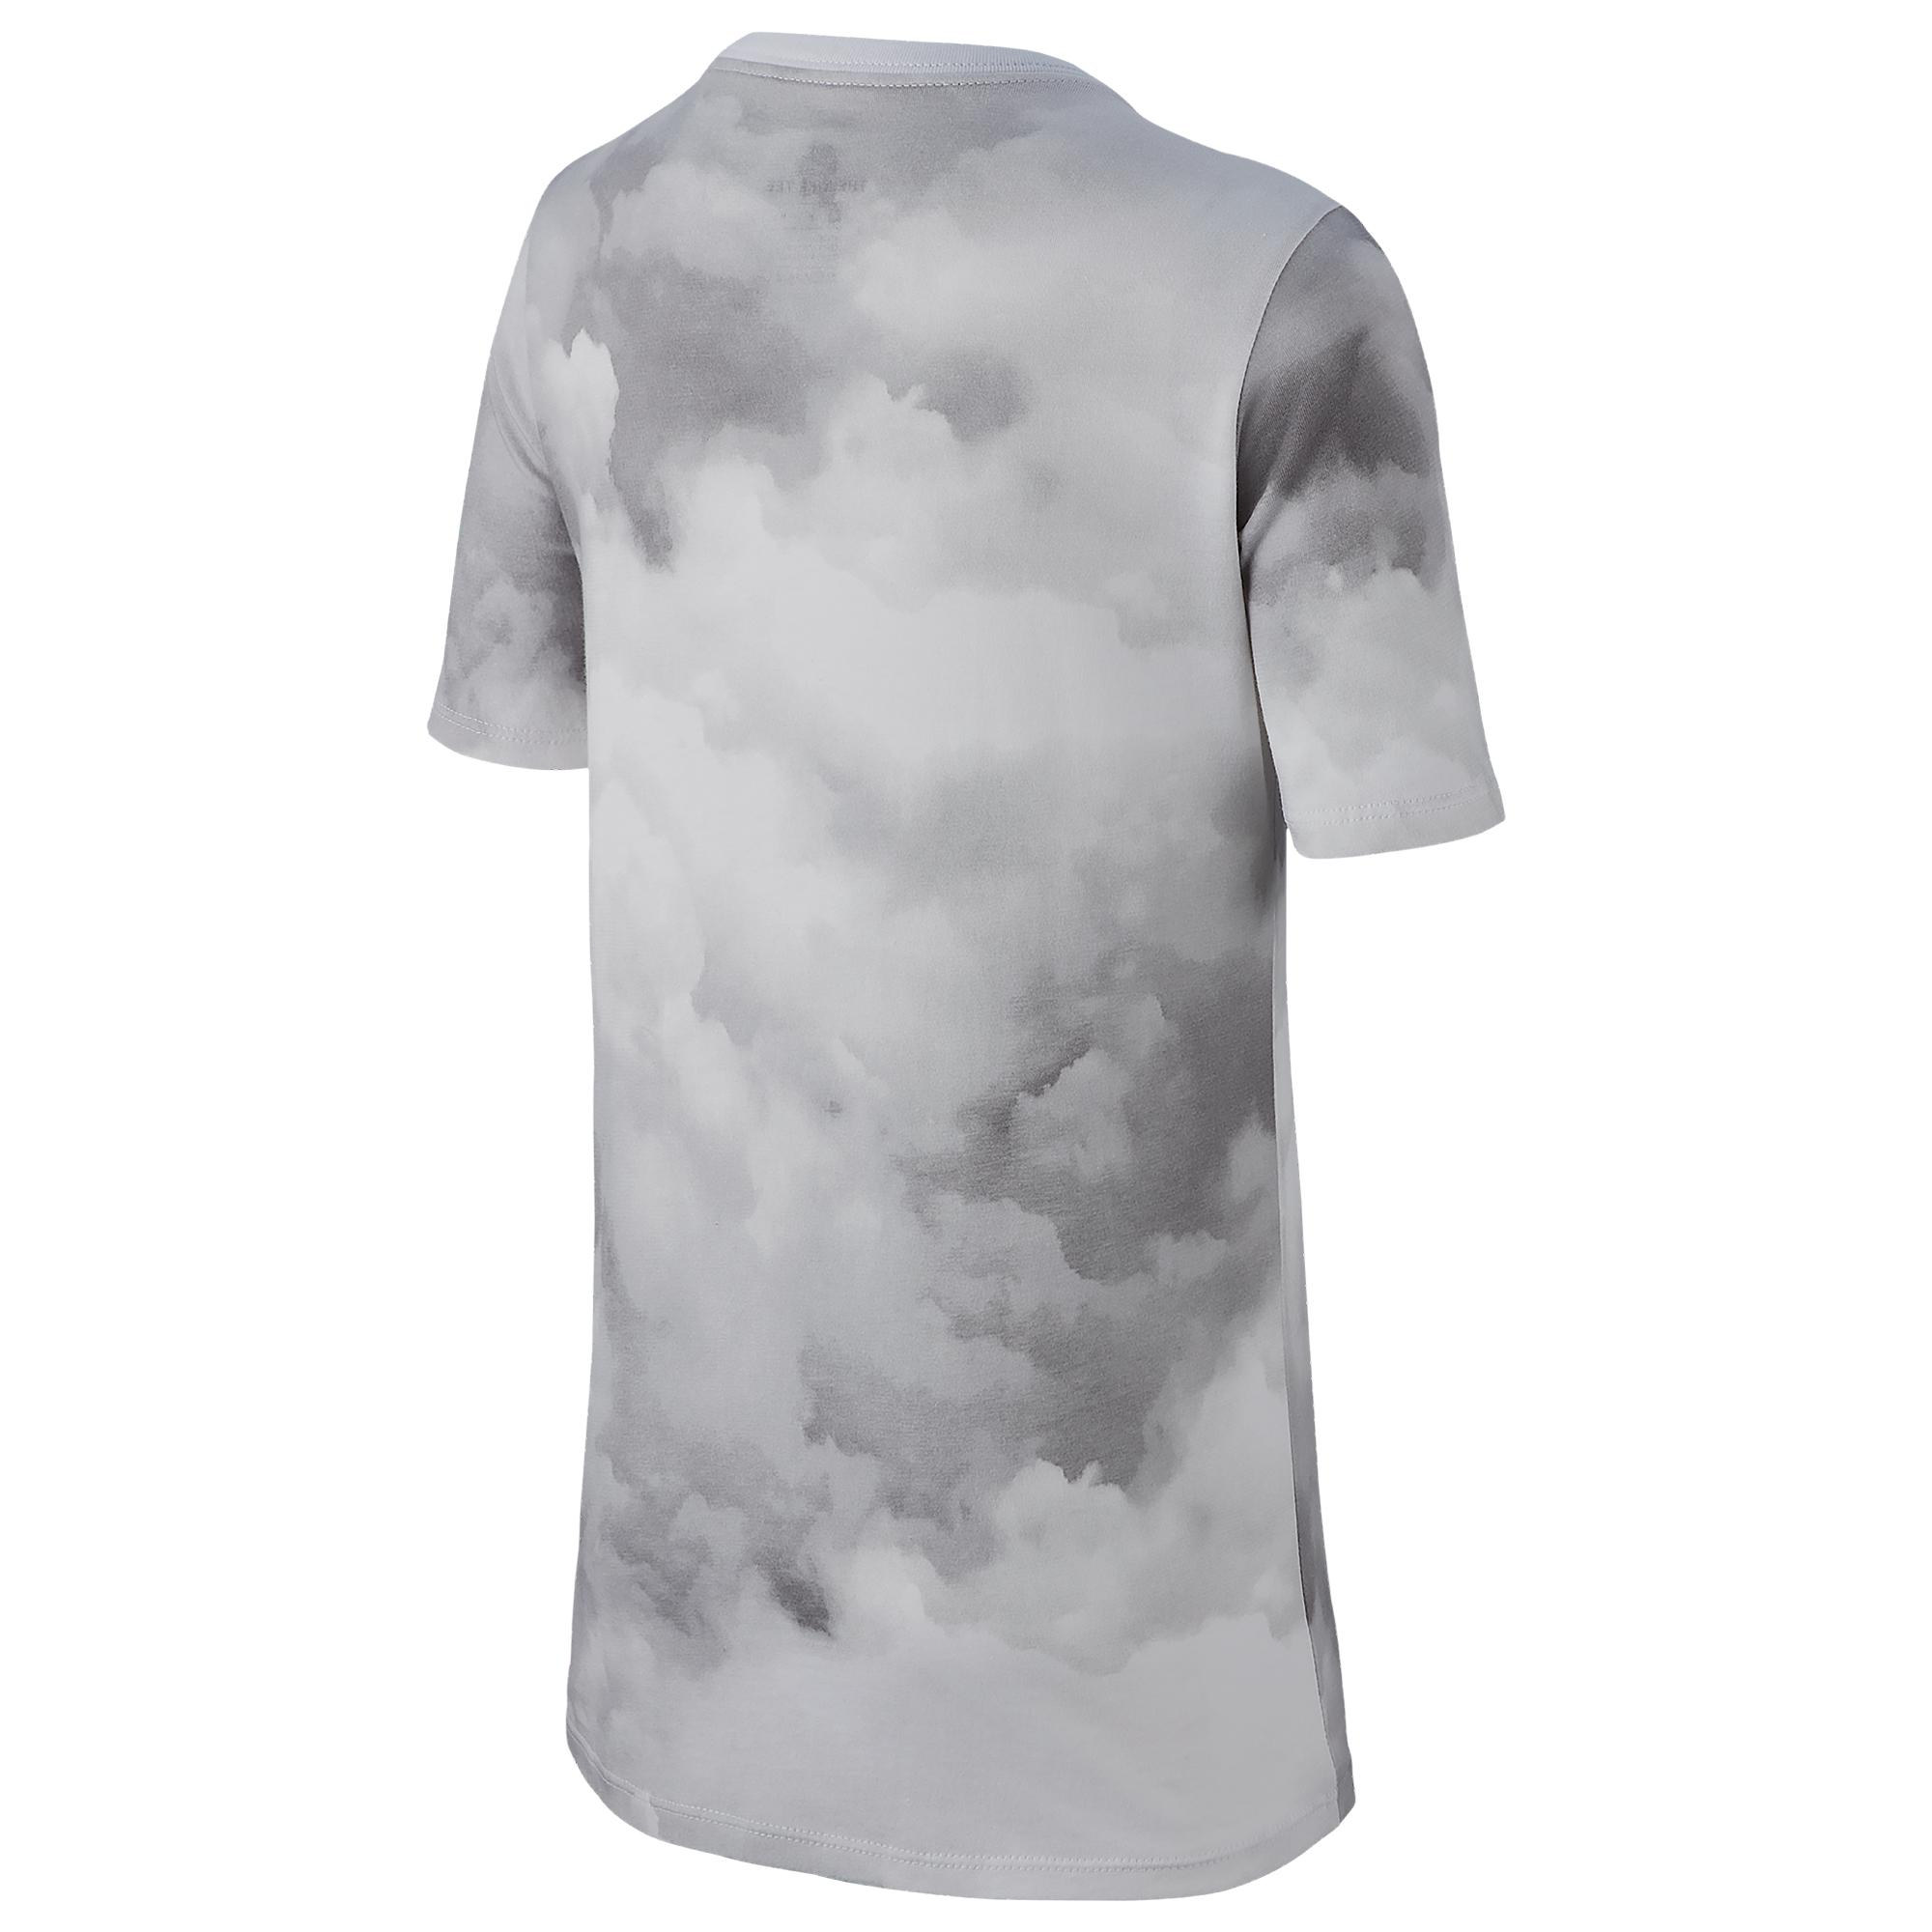 nike air cloud shirt